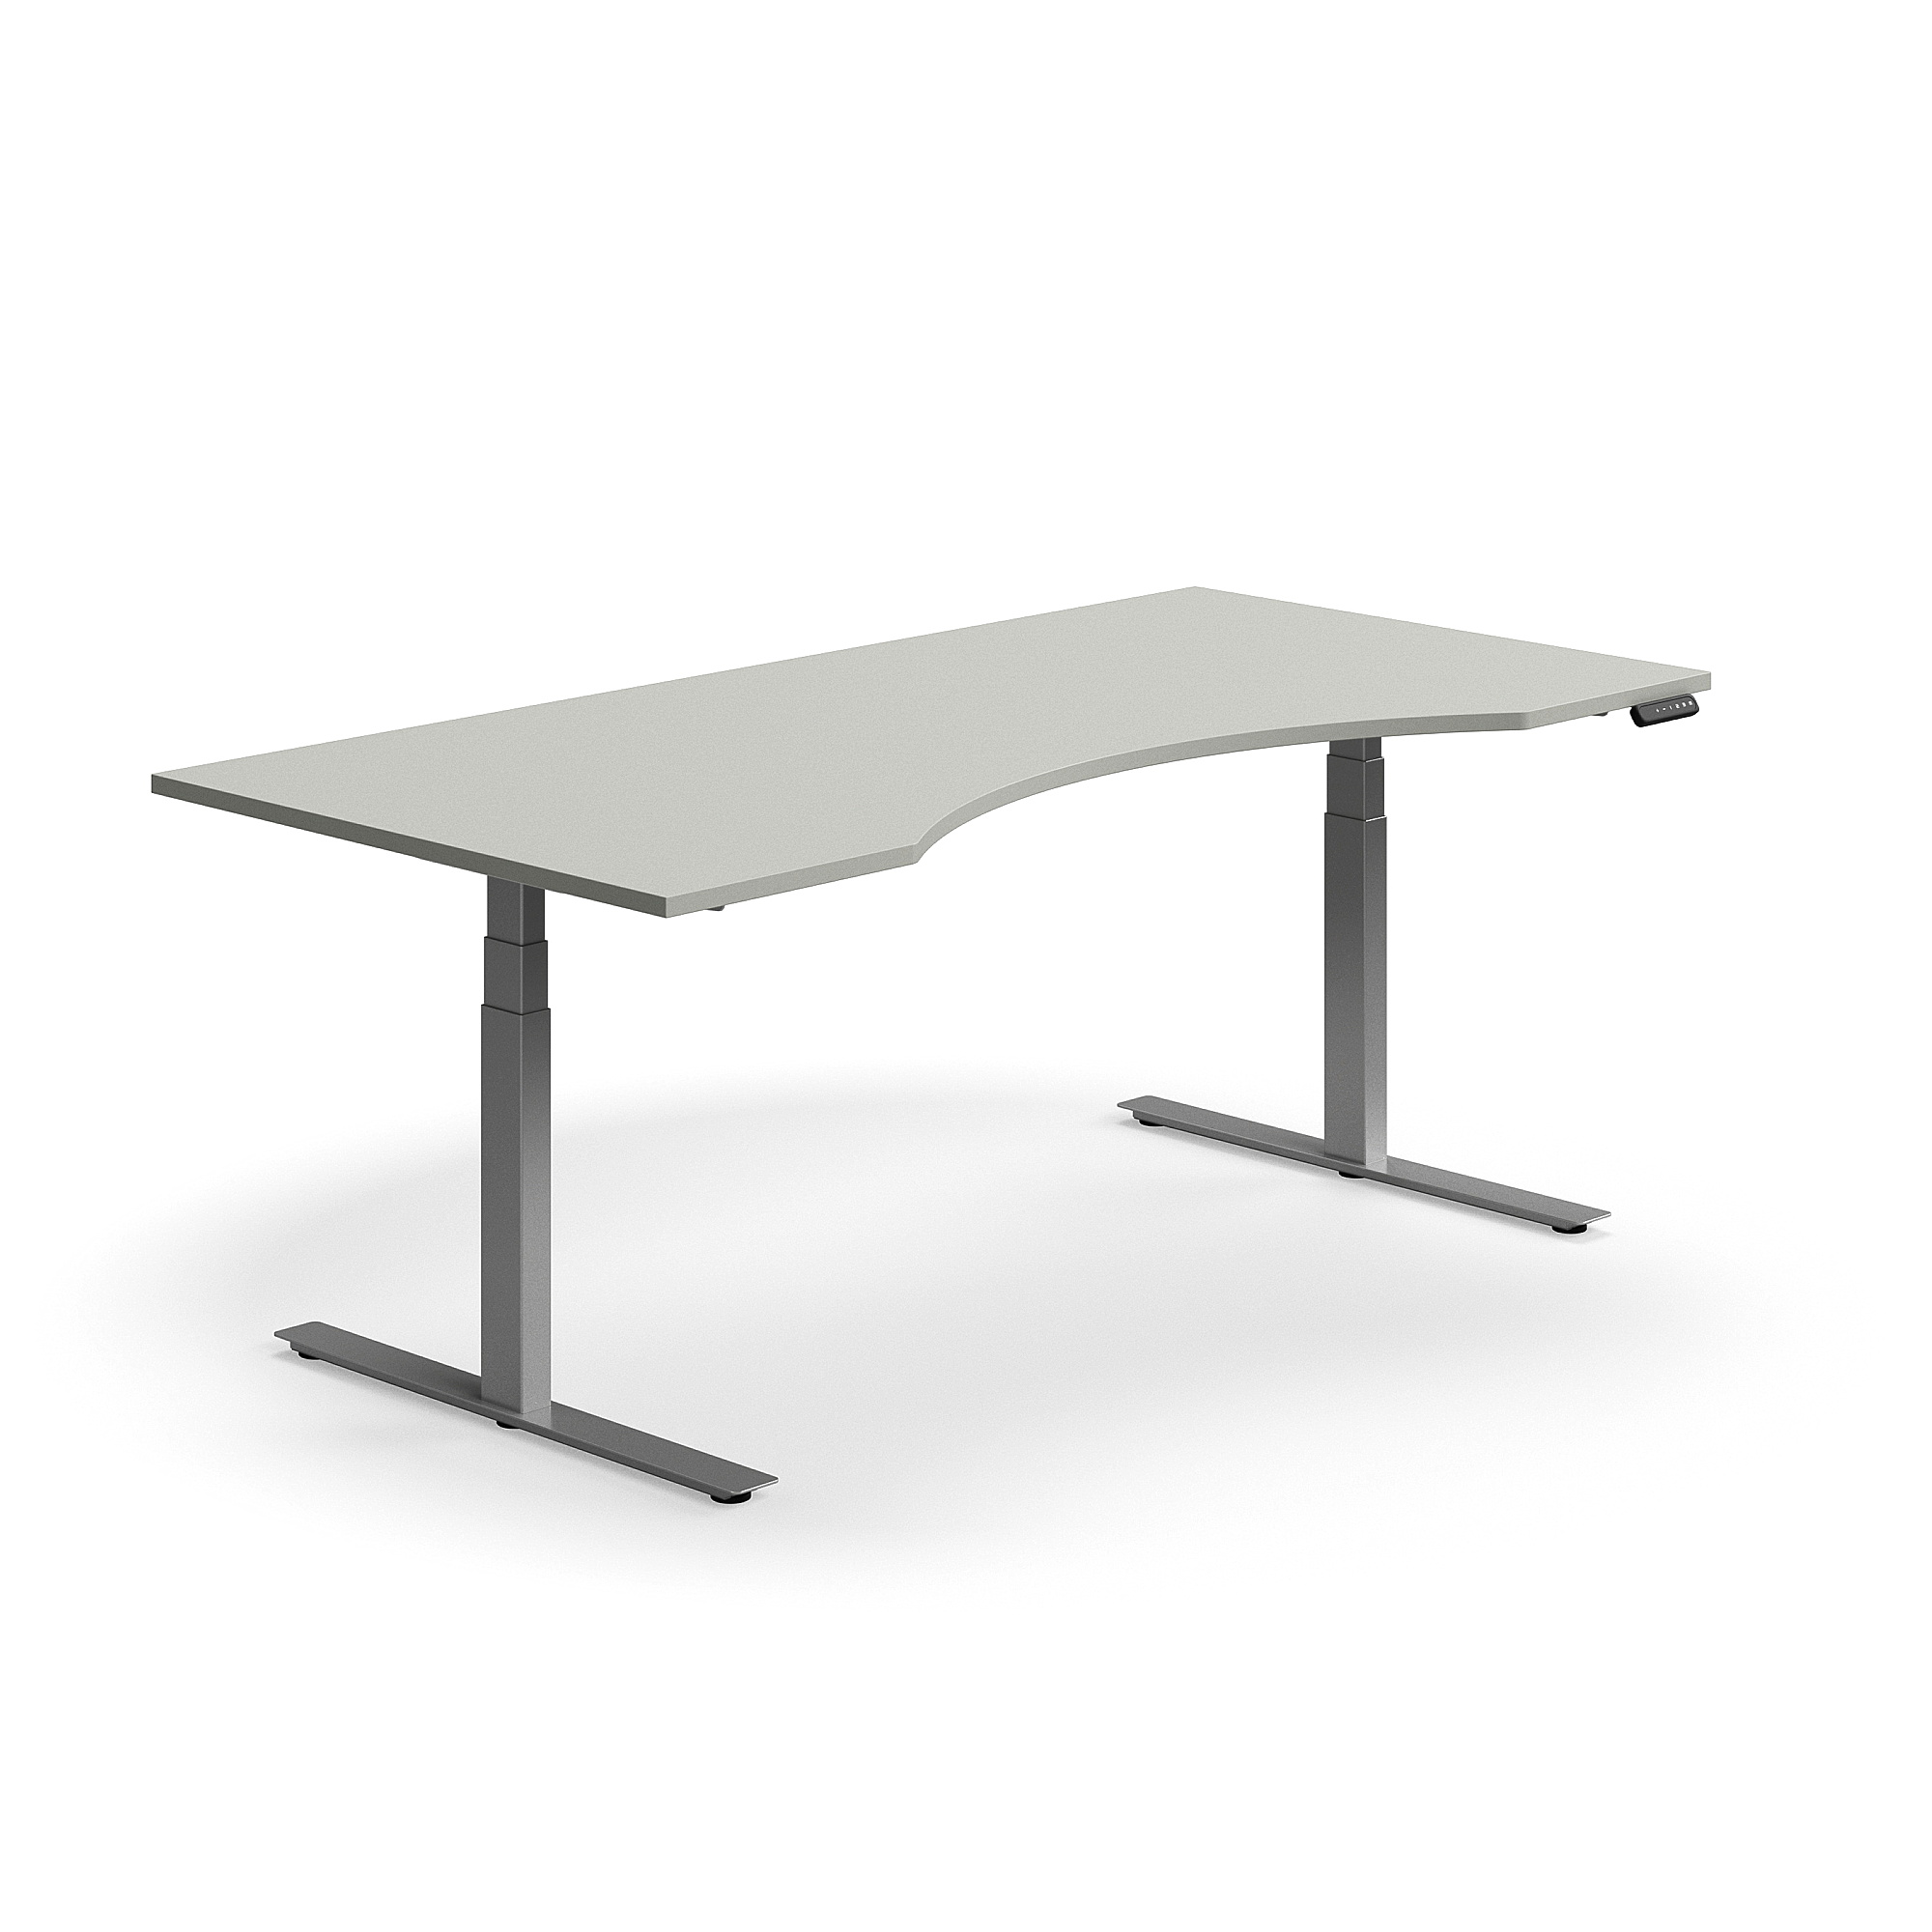 Výškově nastavitelný stůl QBUS, vykrojený, 2000x1000 mm, stříbrná podnož, světle šedá